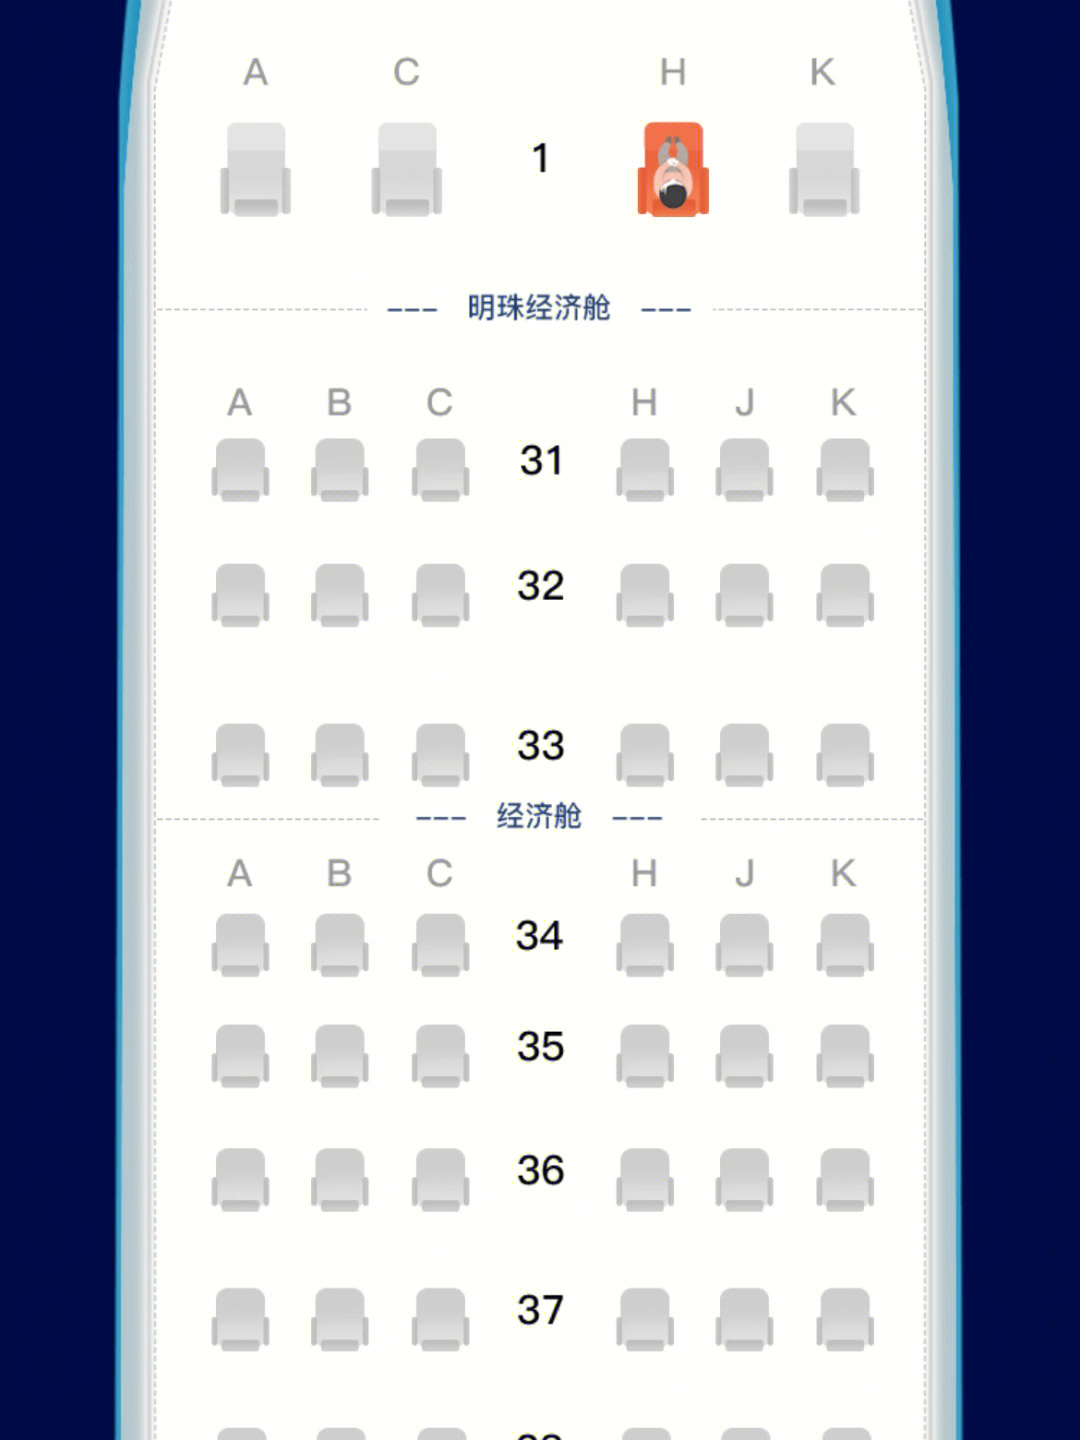 哈尔滨机场行程码图片图片